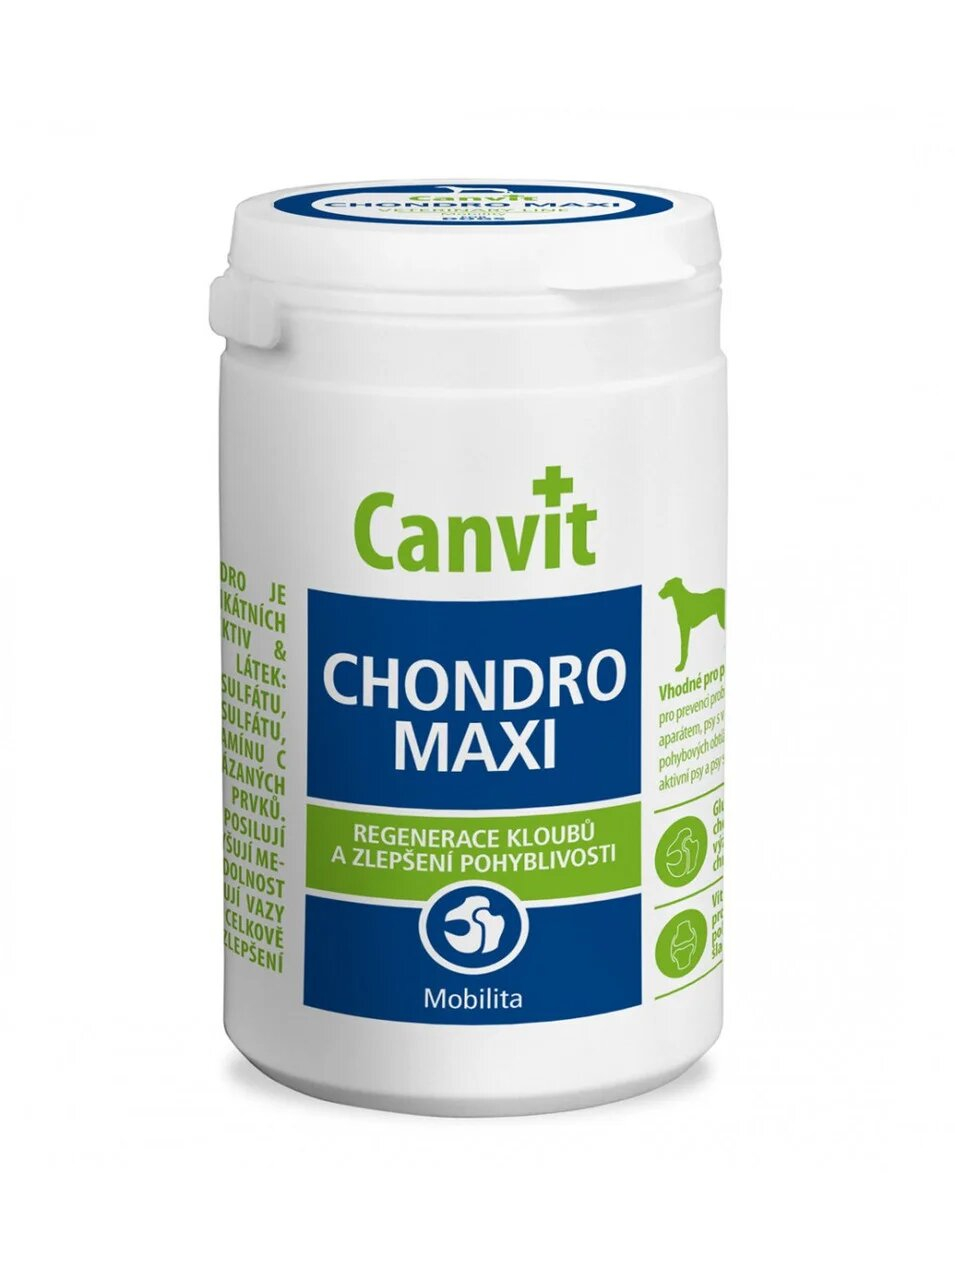 Canvit CHONDRO MAXI Кормова добавка для регенерації суставів та поліпшення подвижностей